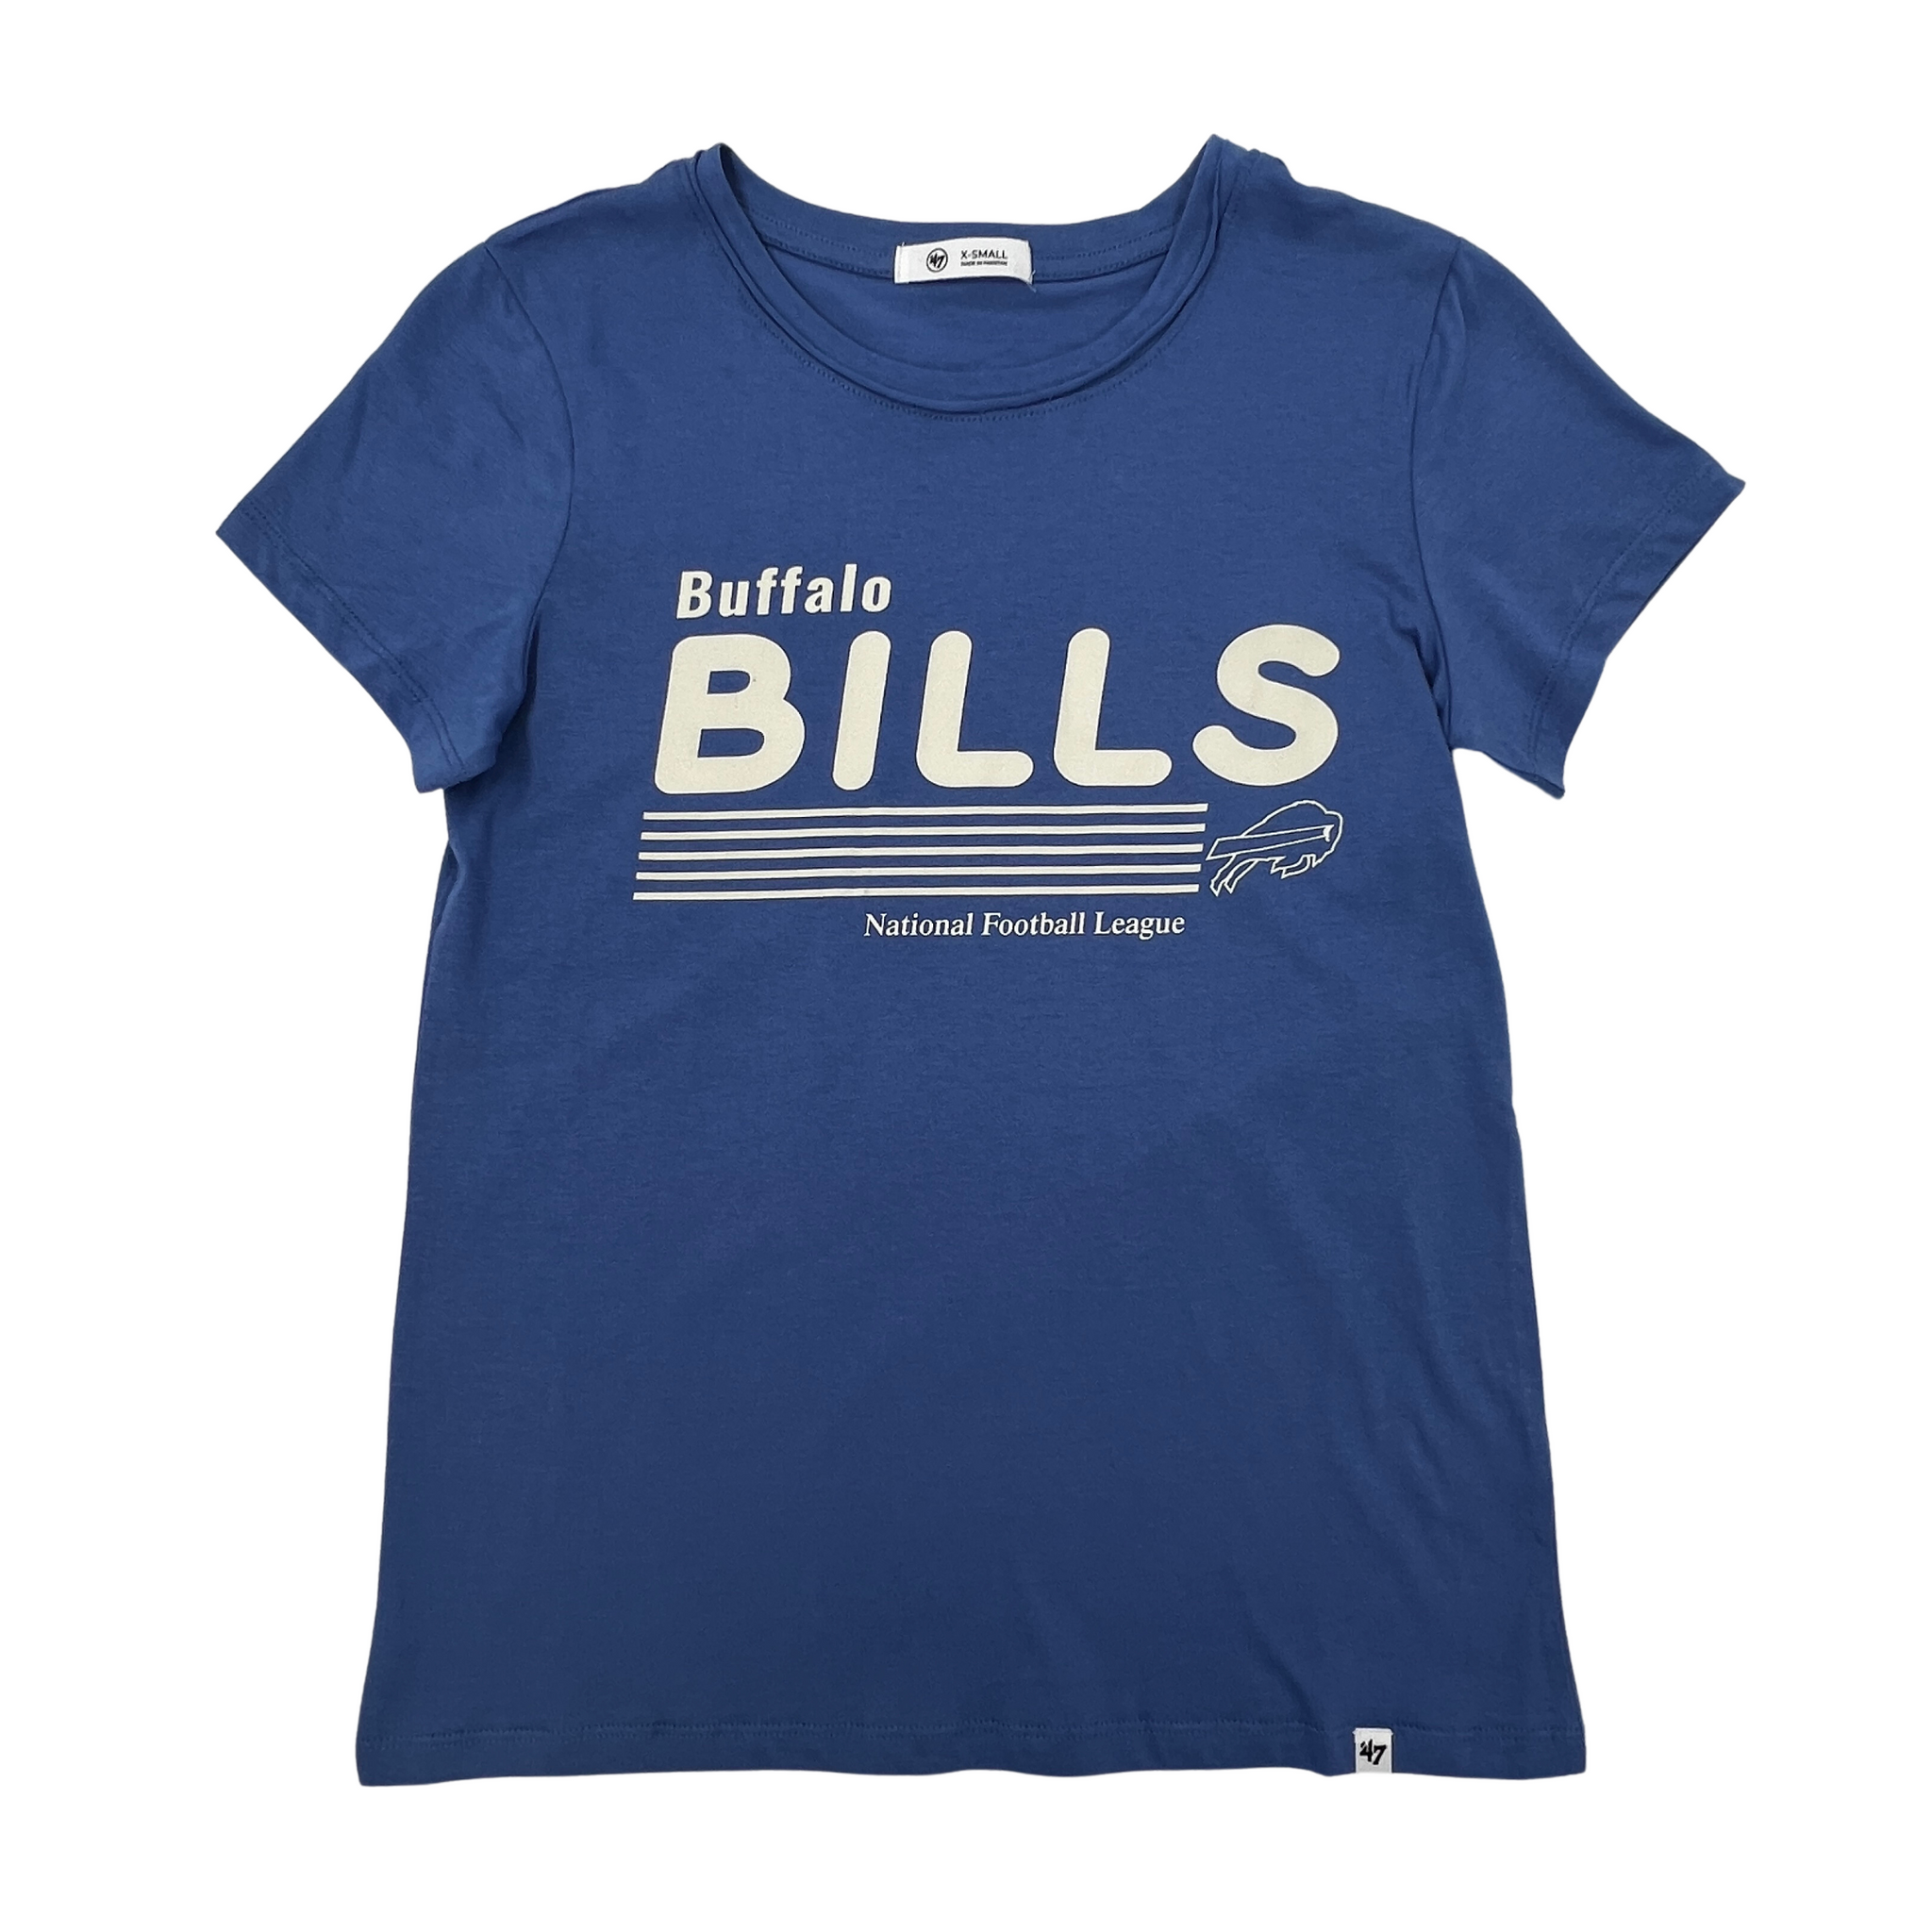 Women's '47 Brand Bills Cadet Blue and Cream Short Sleeve Shirt